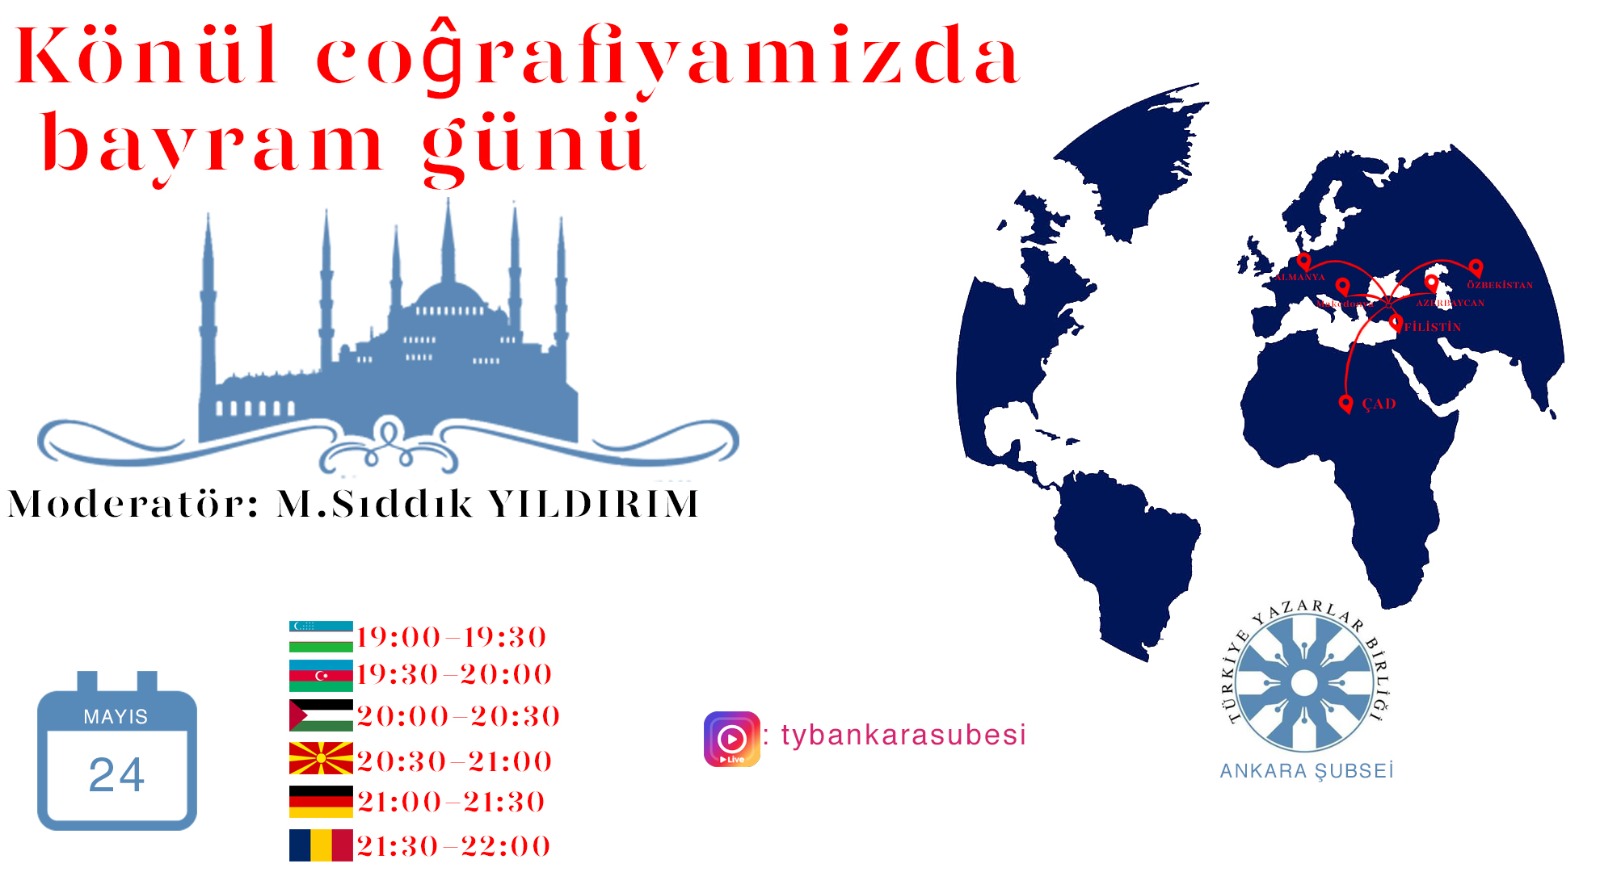 TYB Ankara Şubesi Gönül Coğrafyamızla Bayramlaşacak